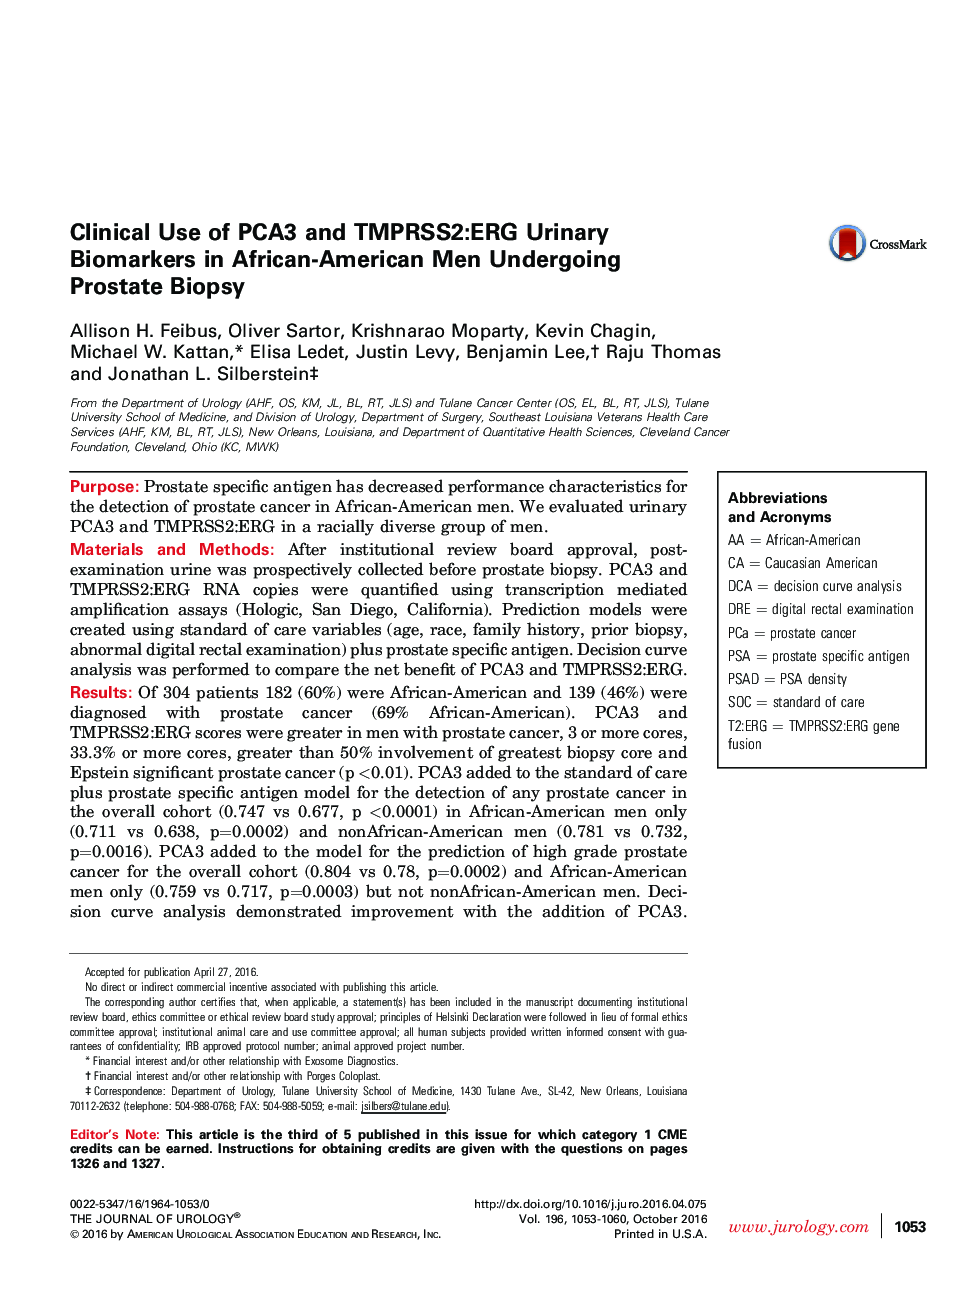 استفاده بالینی از شاخص های زیستی ادراری PCA3 و TMPRSS2: ERG در مردان آمریکایی های آفریقایی تبار تحت بیوپسی پروستات 